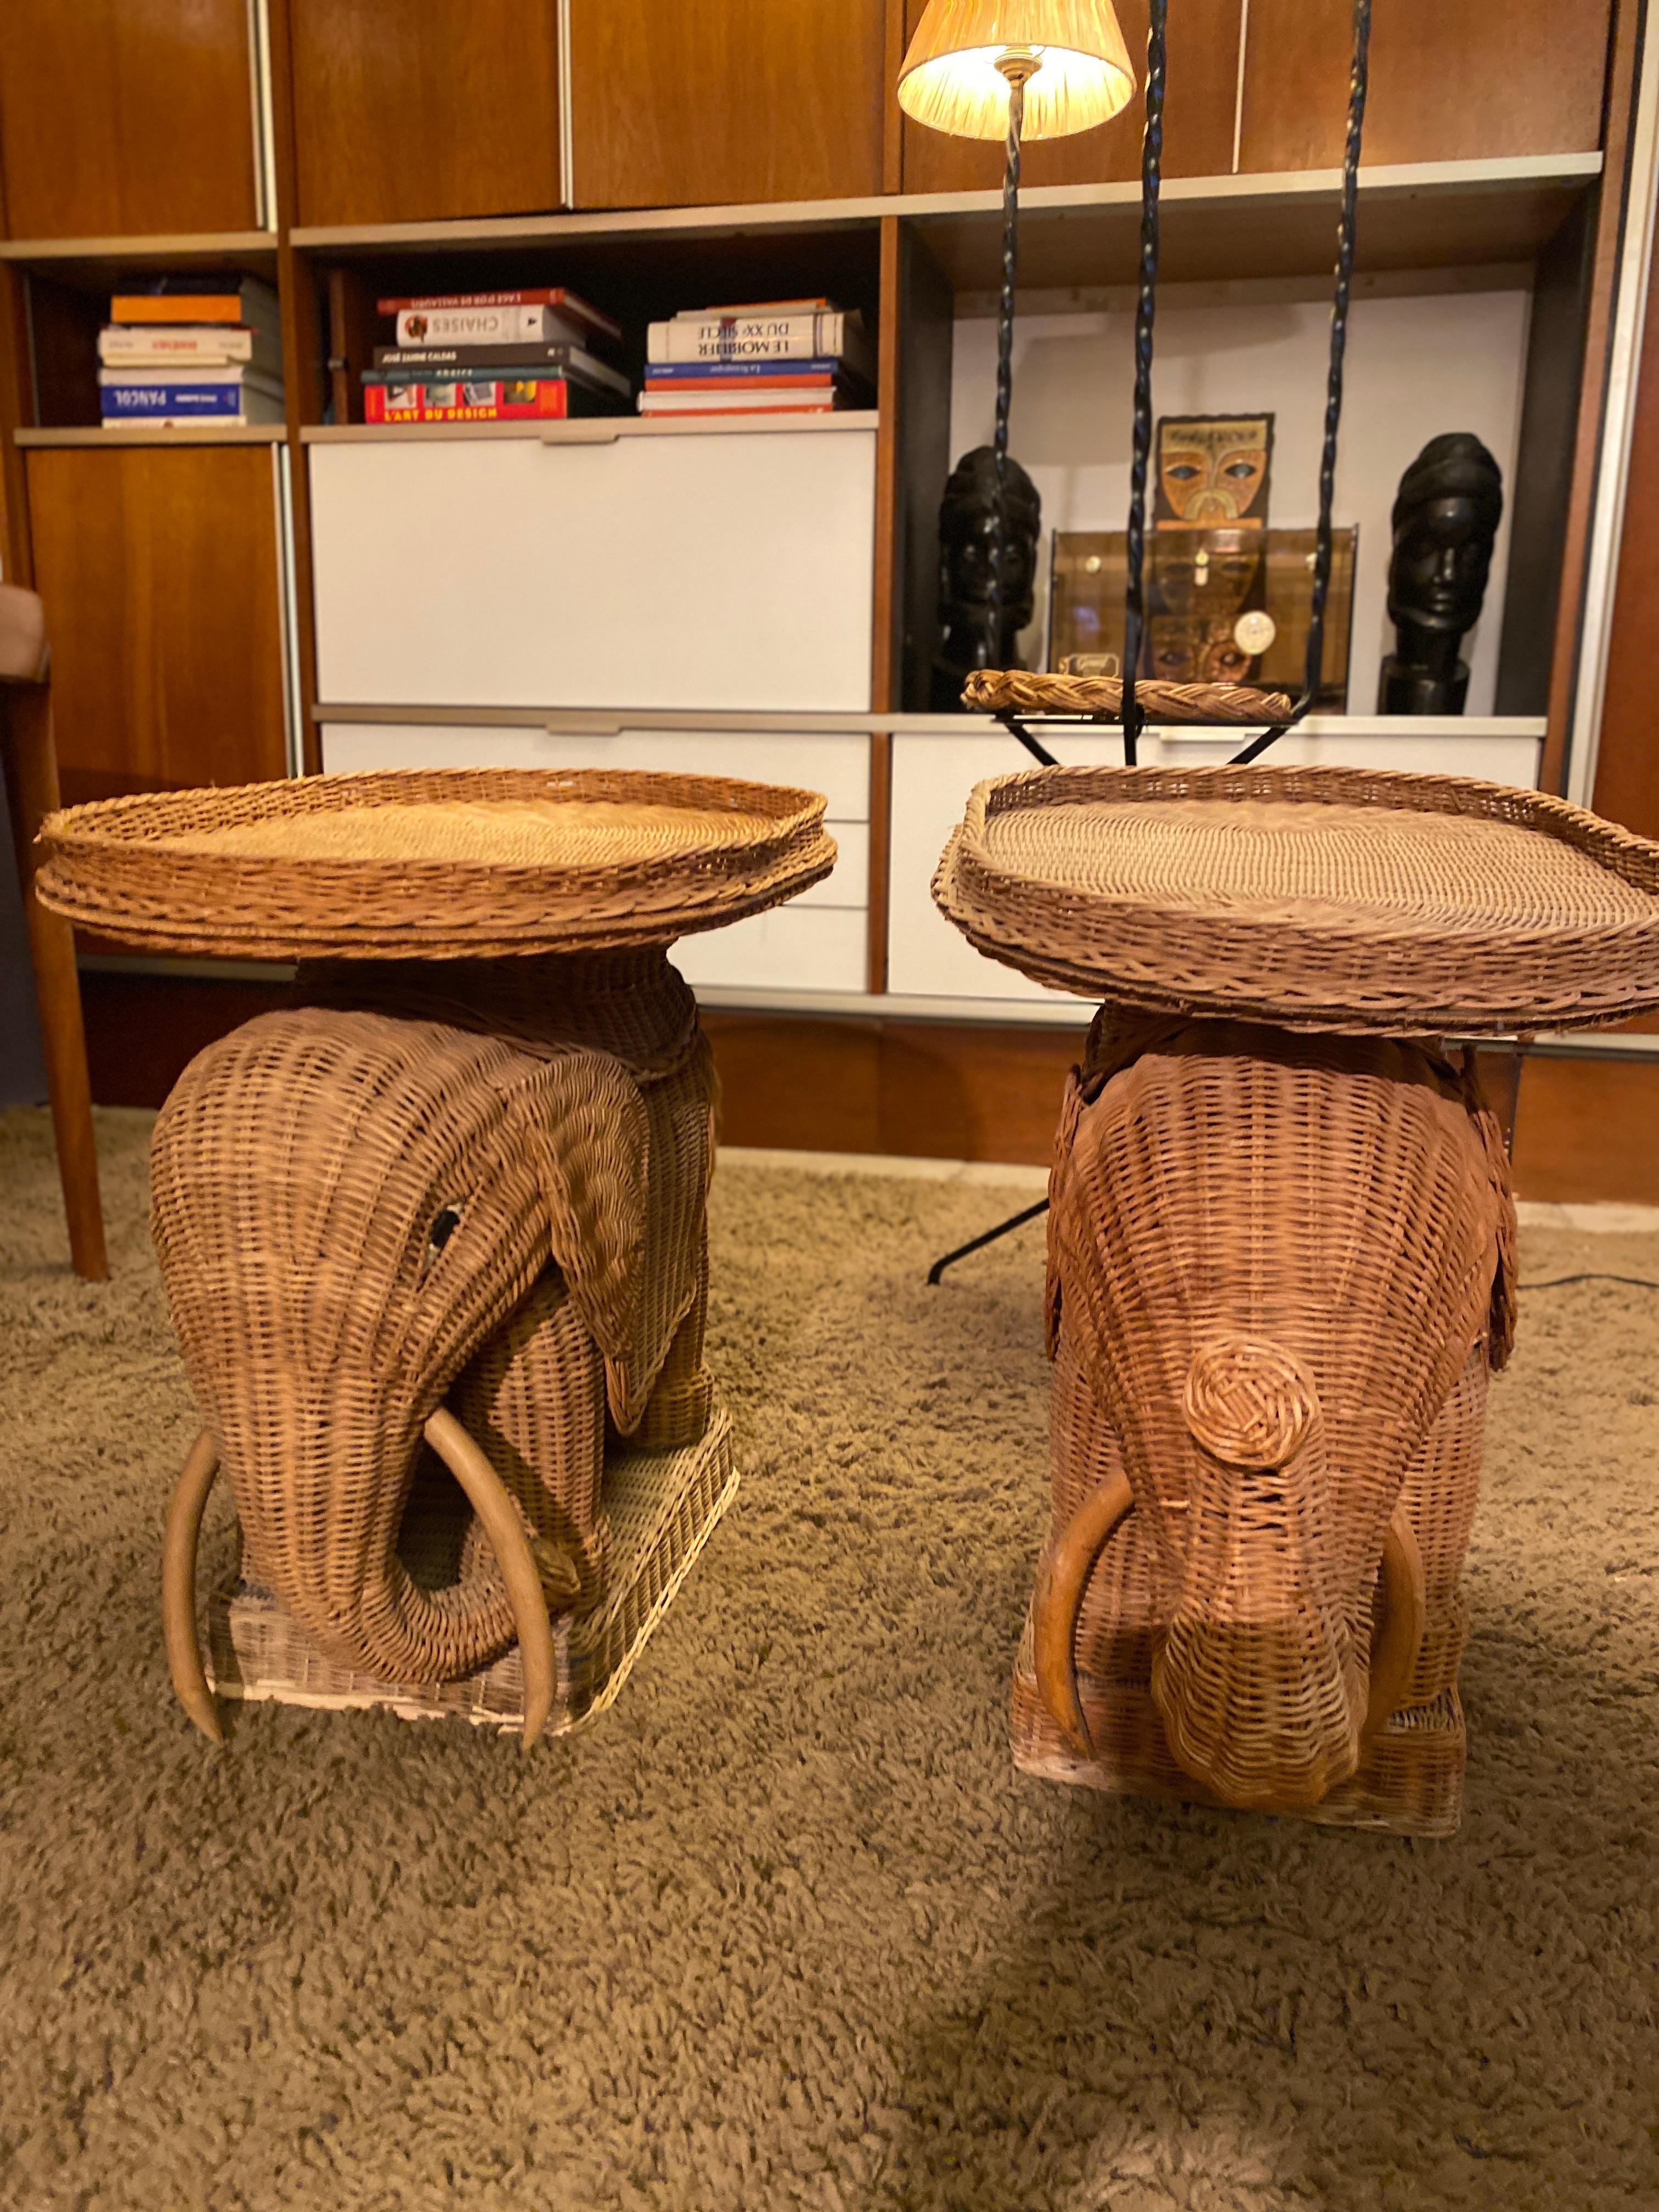 Paire de canapés en forme d'éléphant en osier tressé 1970, plateau amovible et défense en bois.
Le style Vivaï del Sud 